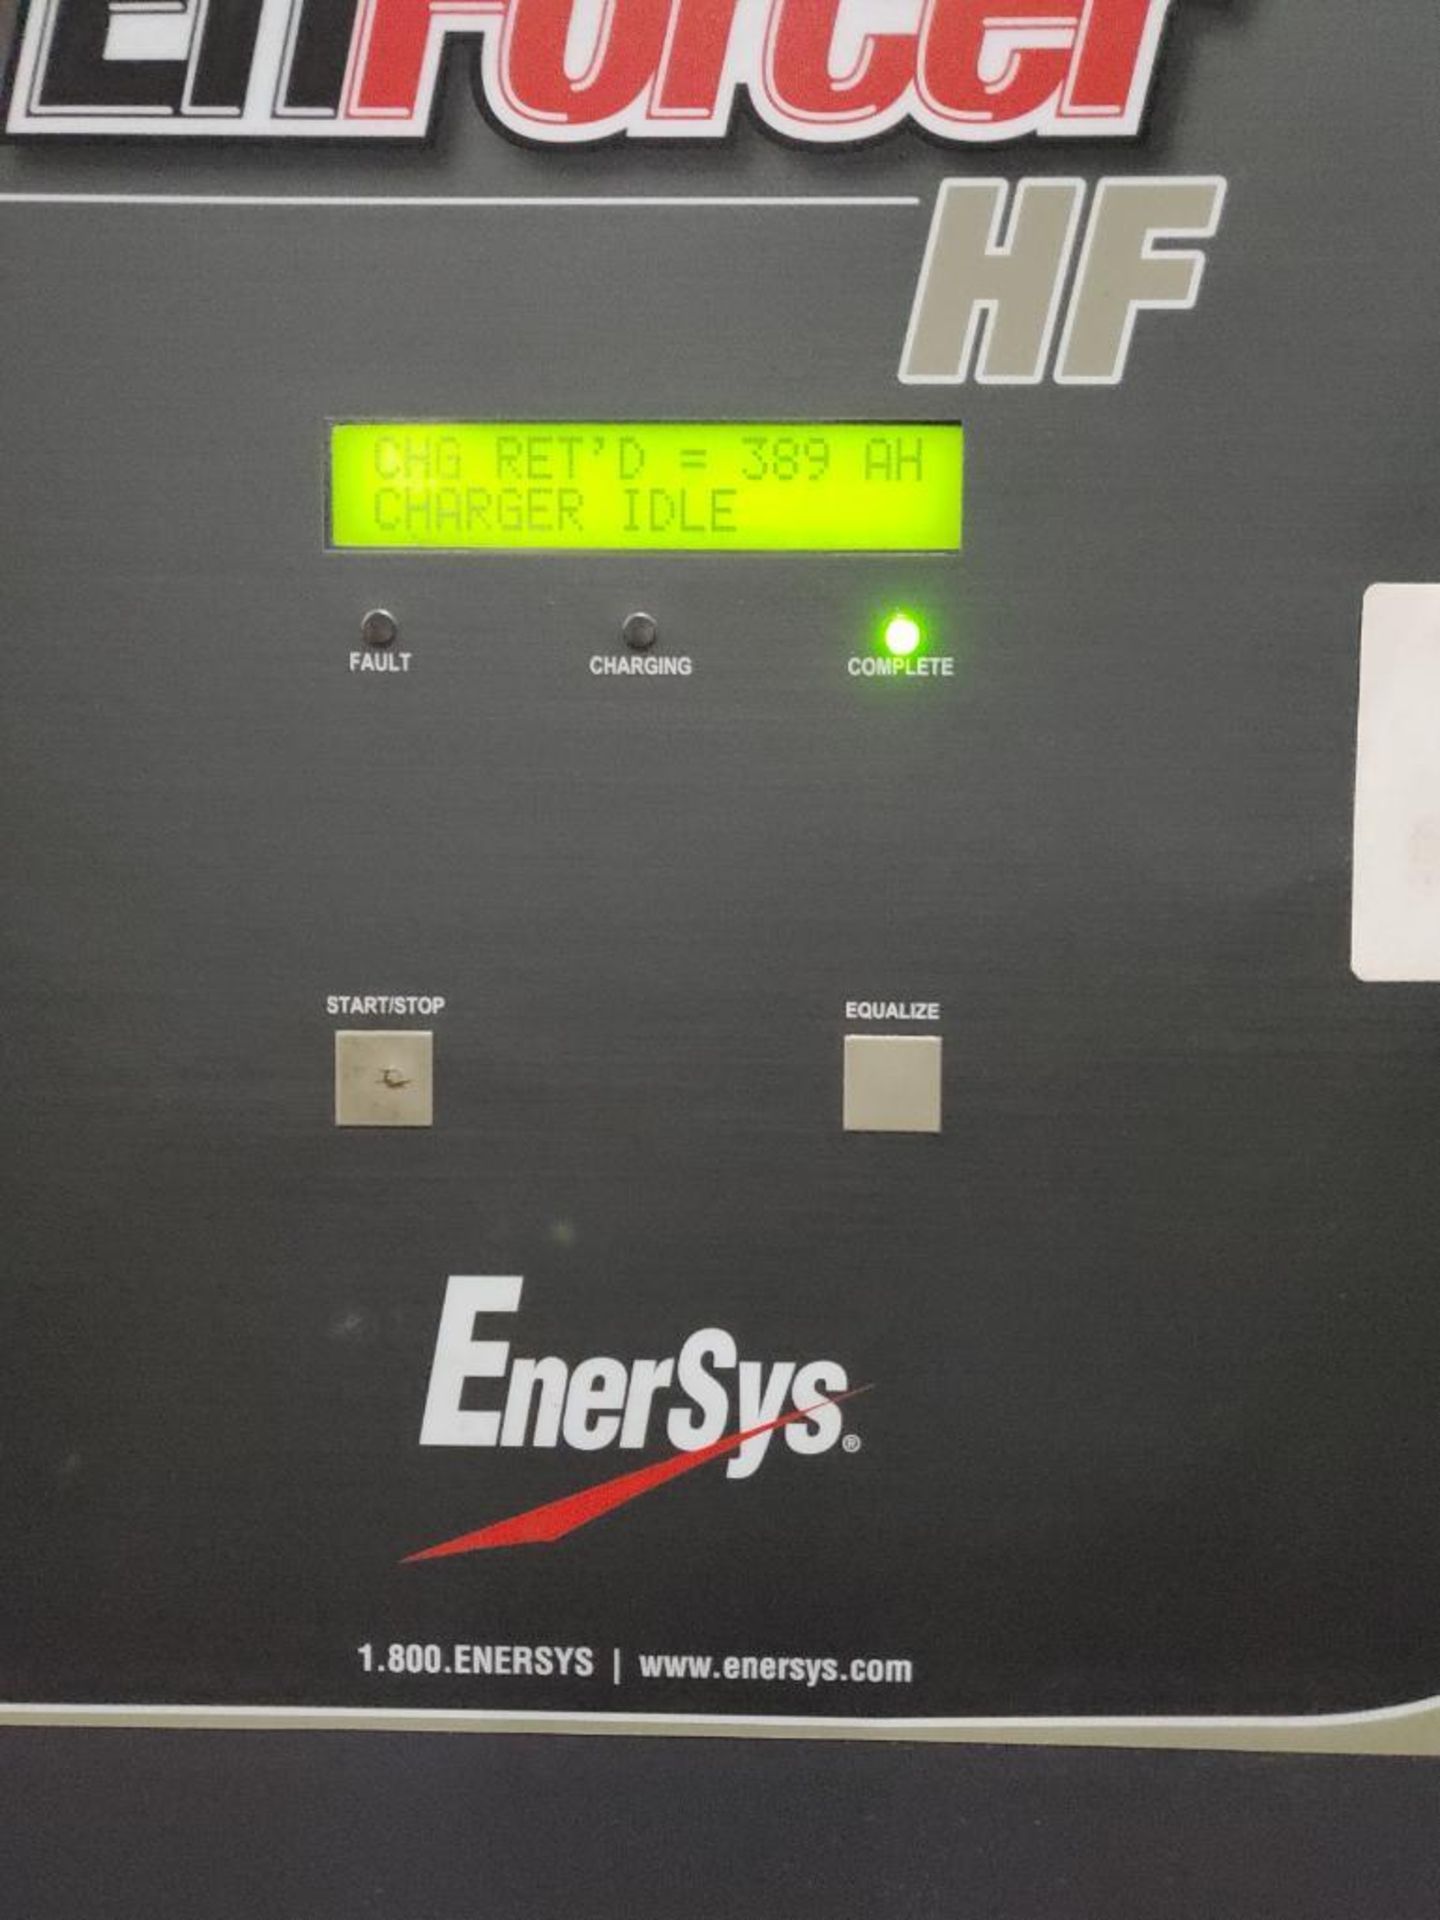 Enersys Enforcer HF 36V Forklift Battery Charger - Image 3 of 4